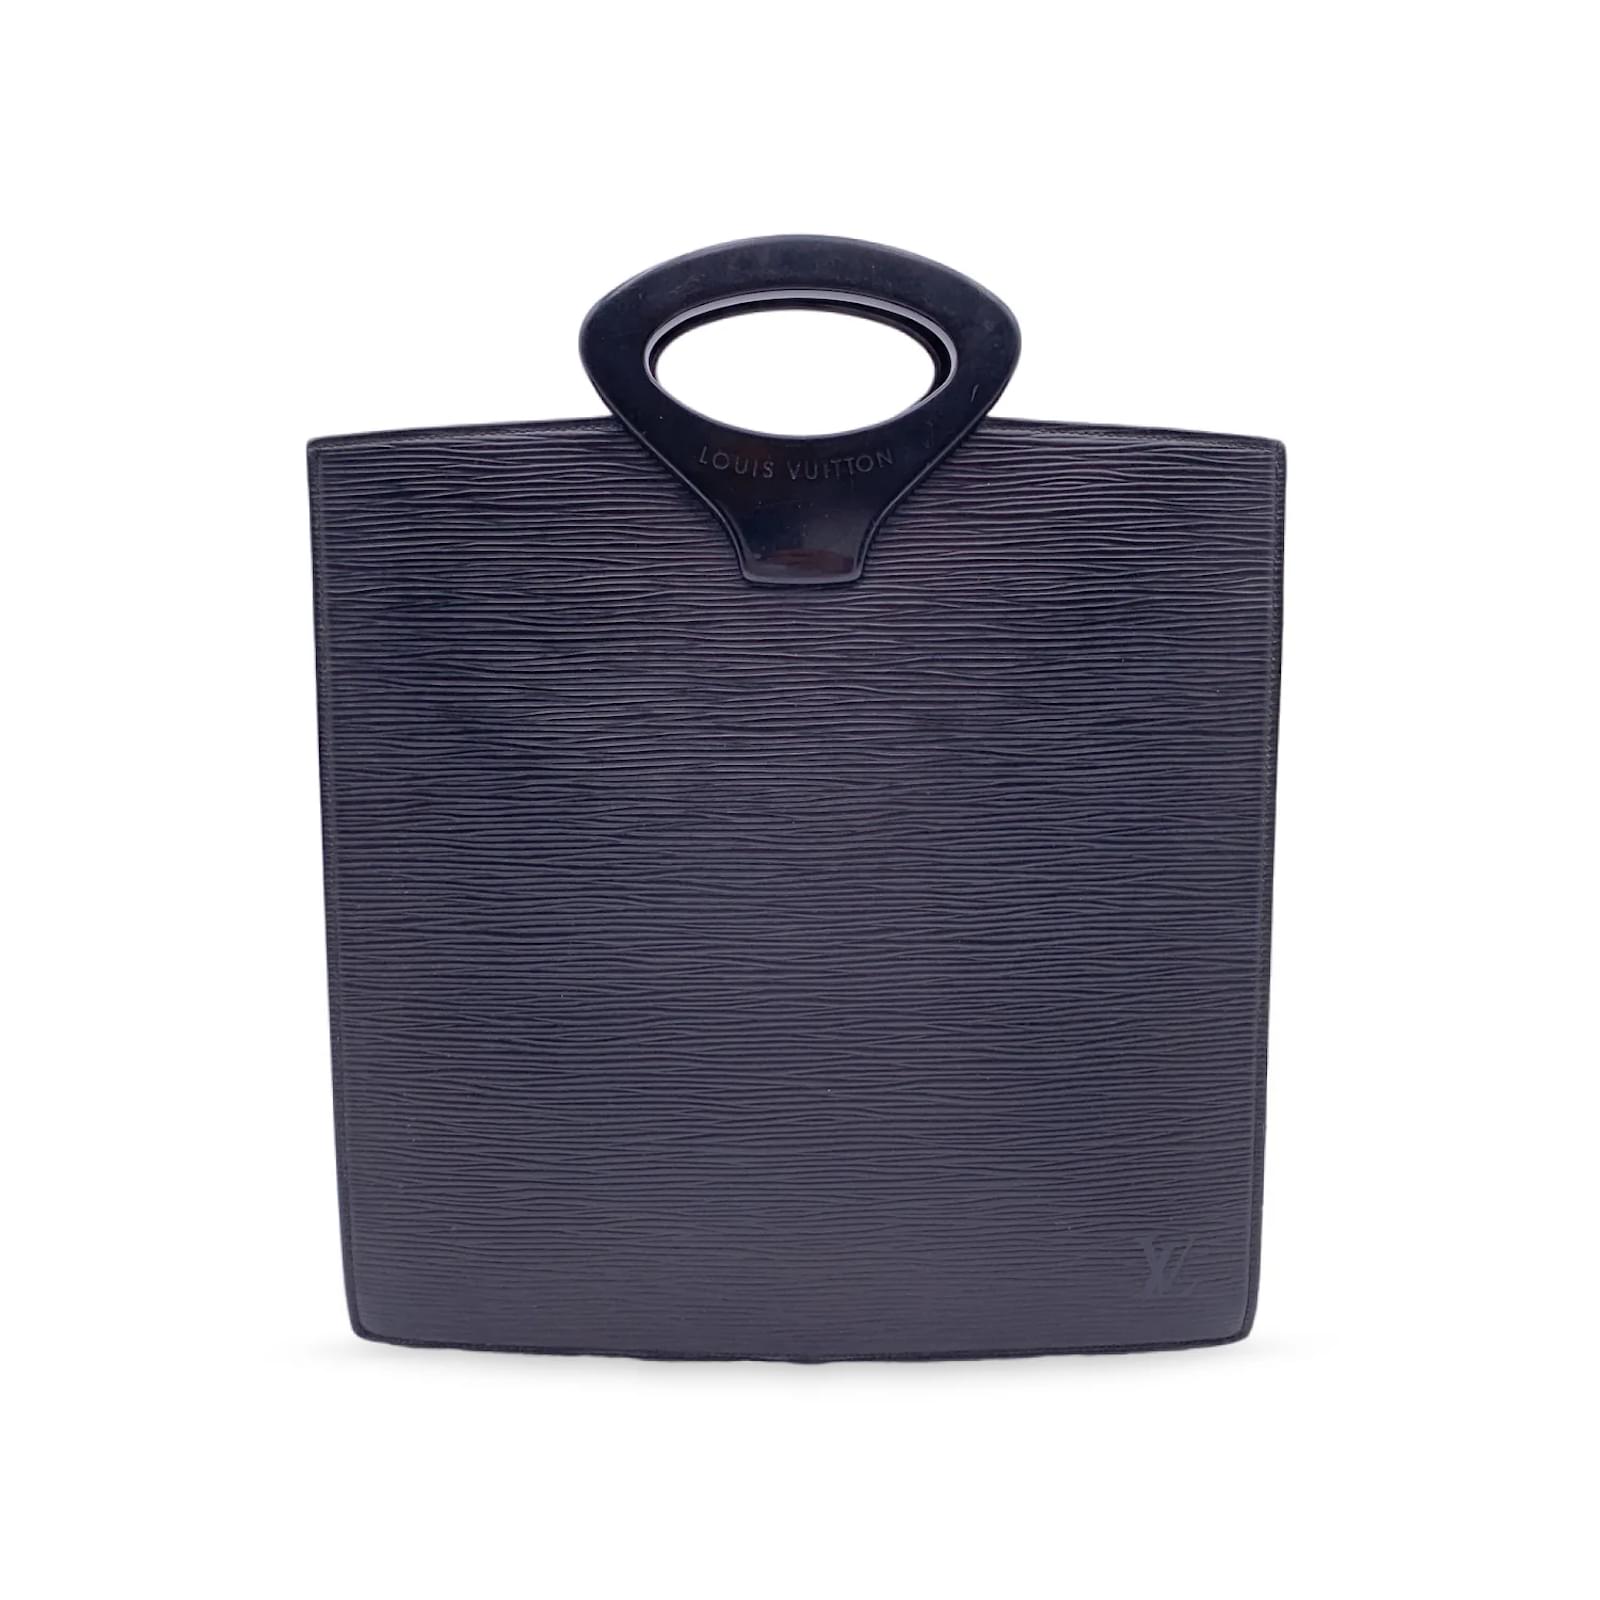 Louis Vuitton Noctambule Epi Leather Top Handle Bag on SALE